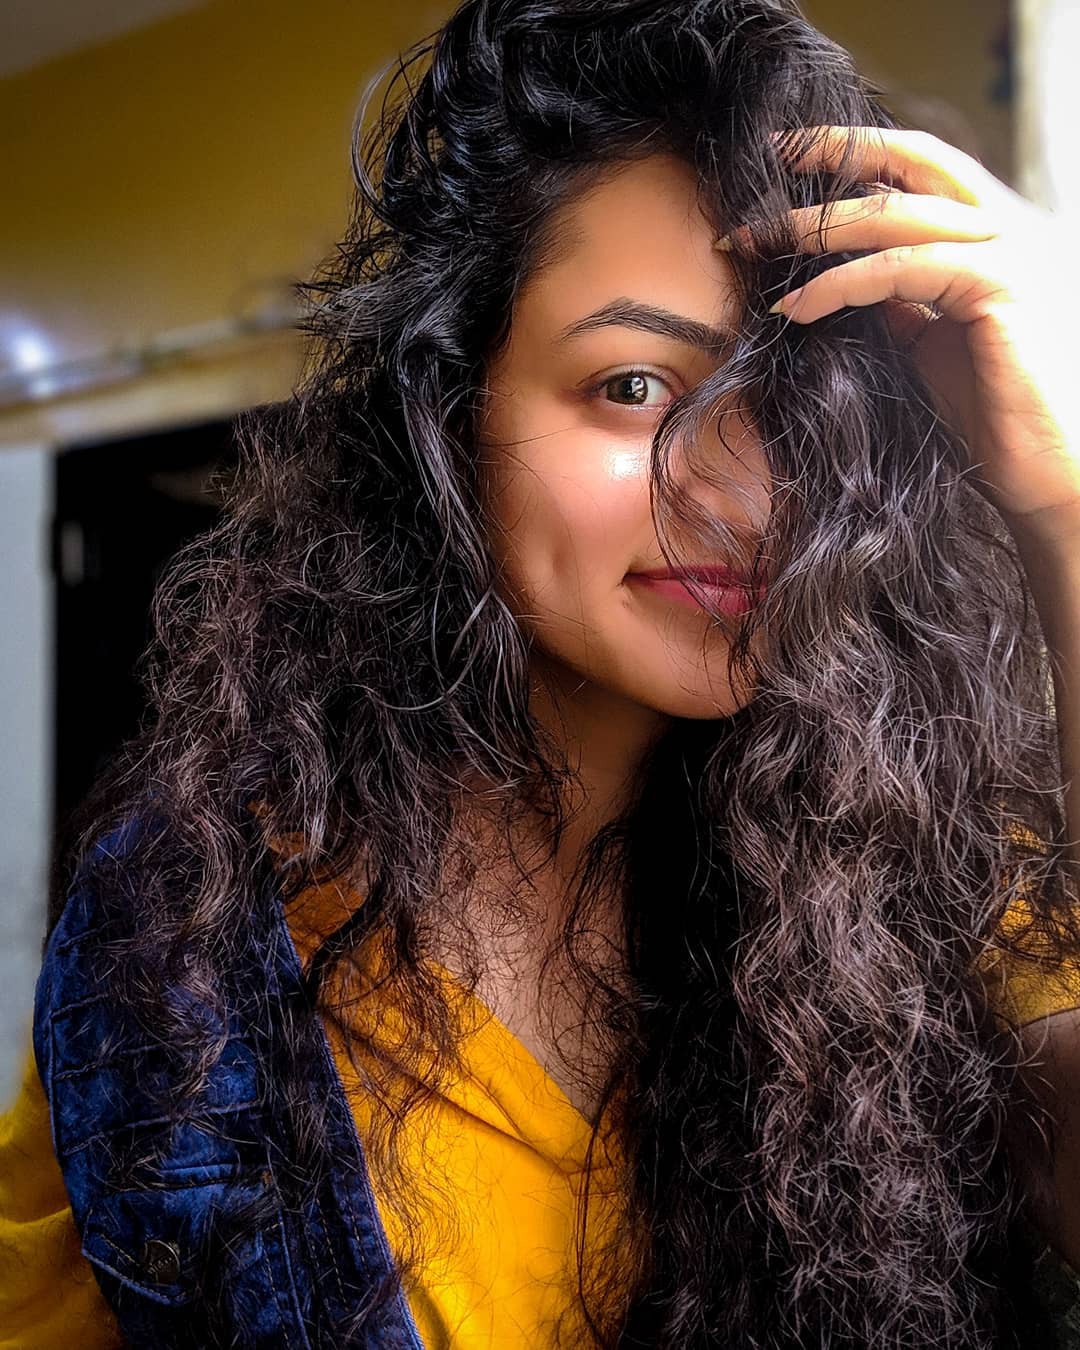 Farhina Parvez Jarimari Instagram, Cabello largo y Tintes de cabello: Pelo largo,  Ideas para teñir el cabello,  Pelo castaño,  Sesión de fotos,  pelo negro,  Farhina Parvez Jarimari  